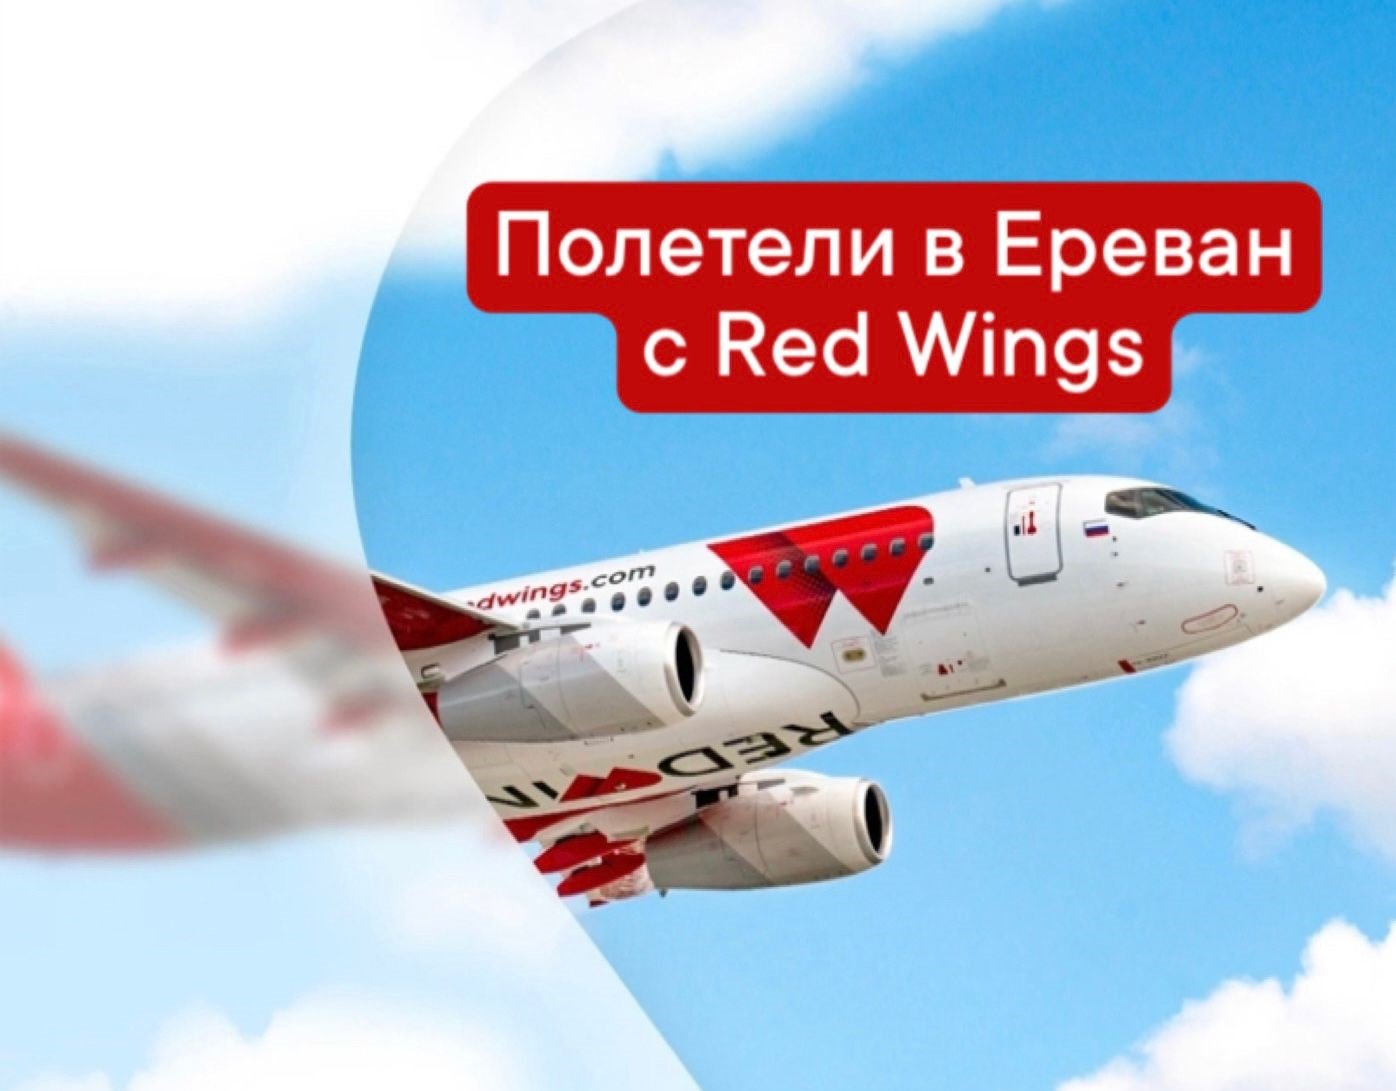 Полететь в Ереван с Red Wings